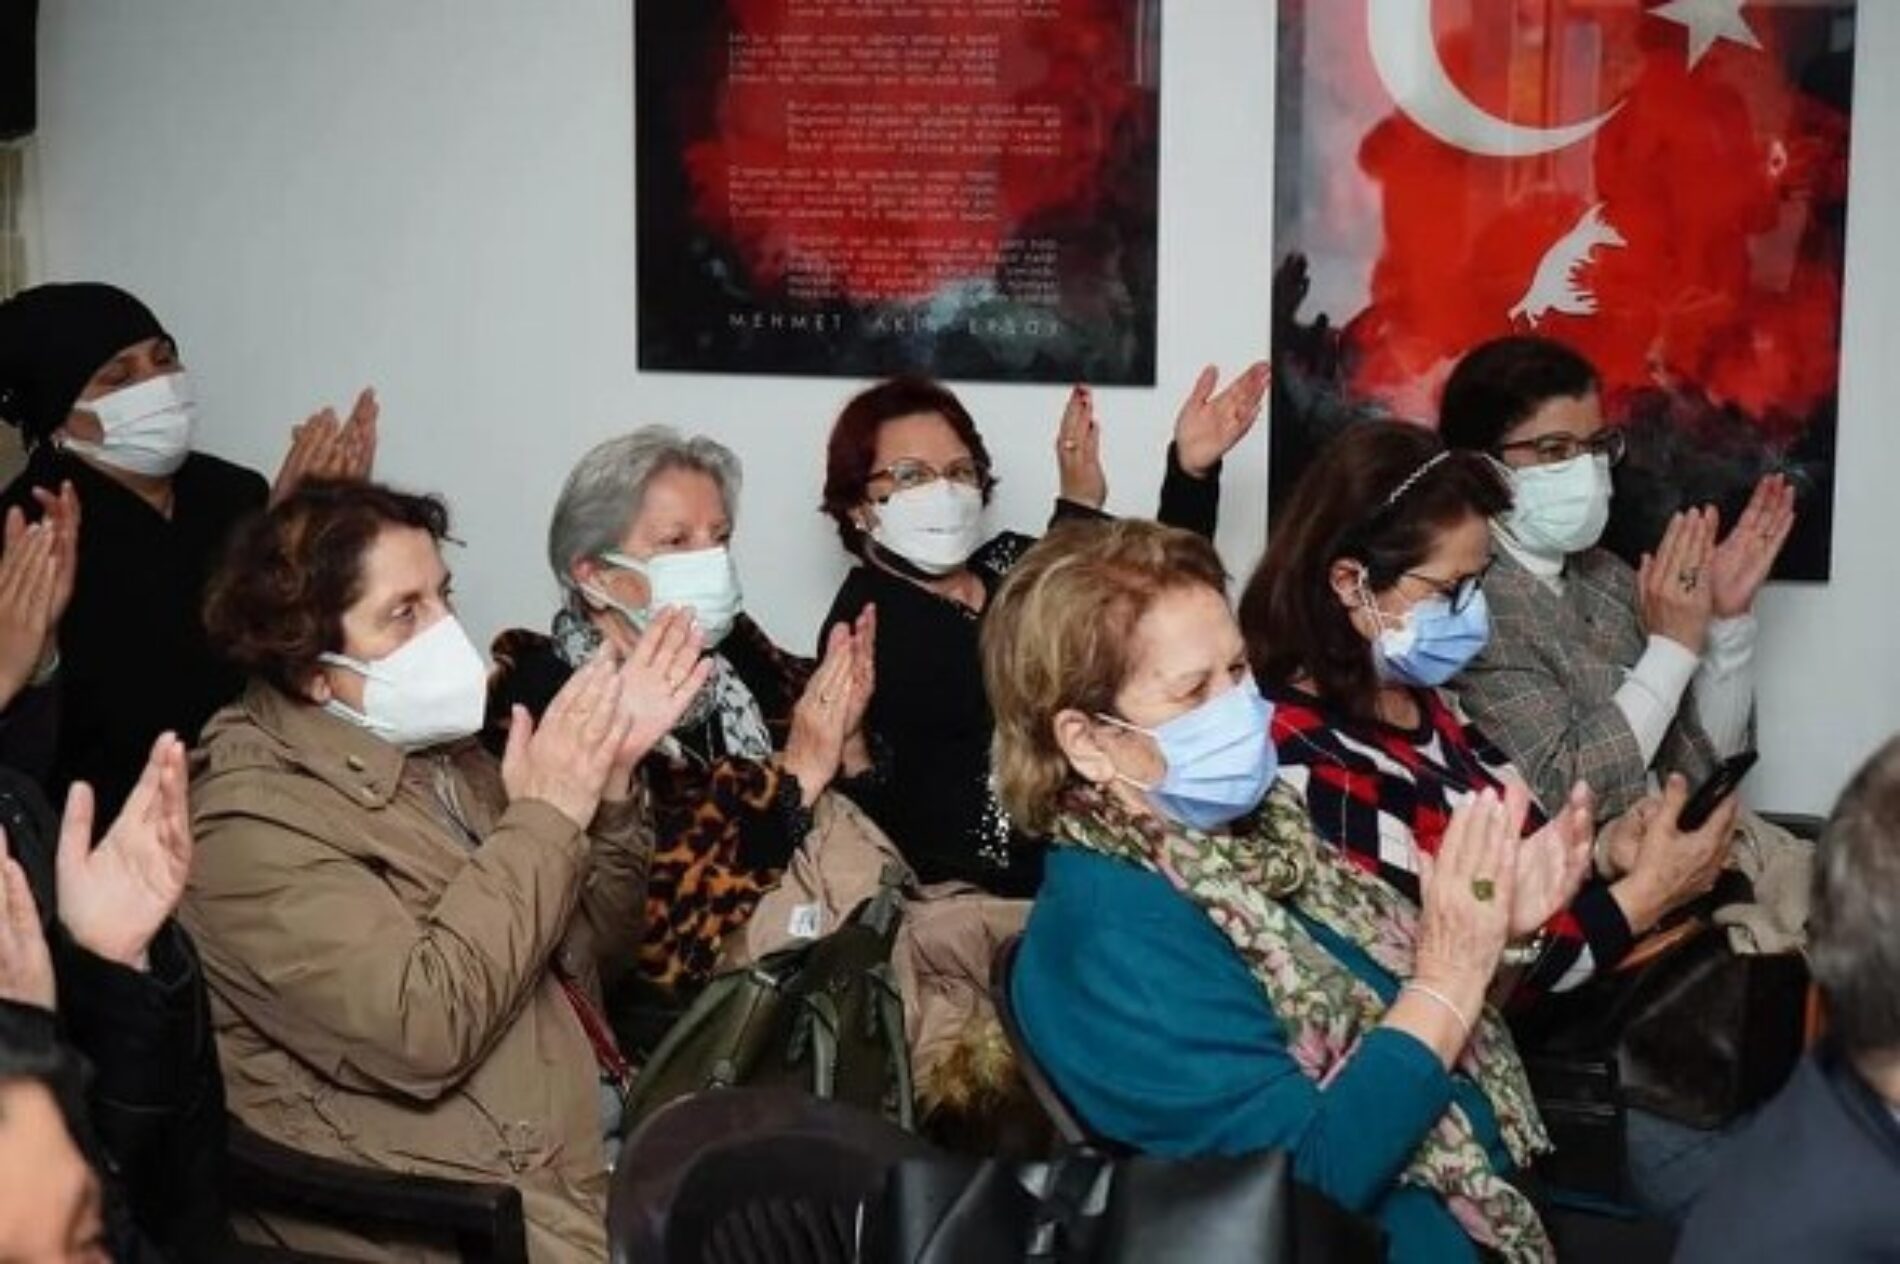 TYSD Beyoğlu Şubemiz 8 Mart Dünya Emekçi Kadınlar Günü Dolayısıyla Etkinlik Düzenlemiştir